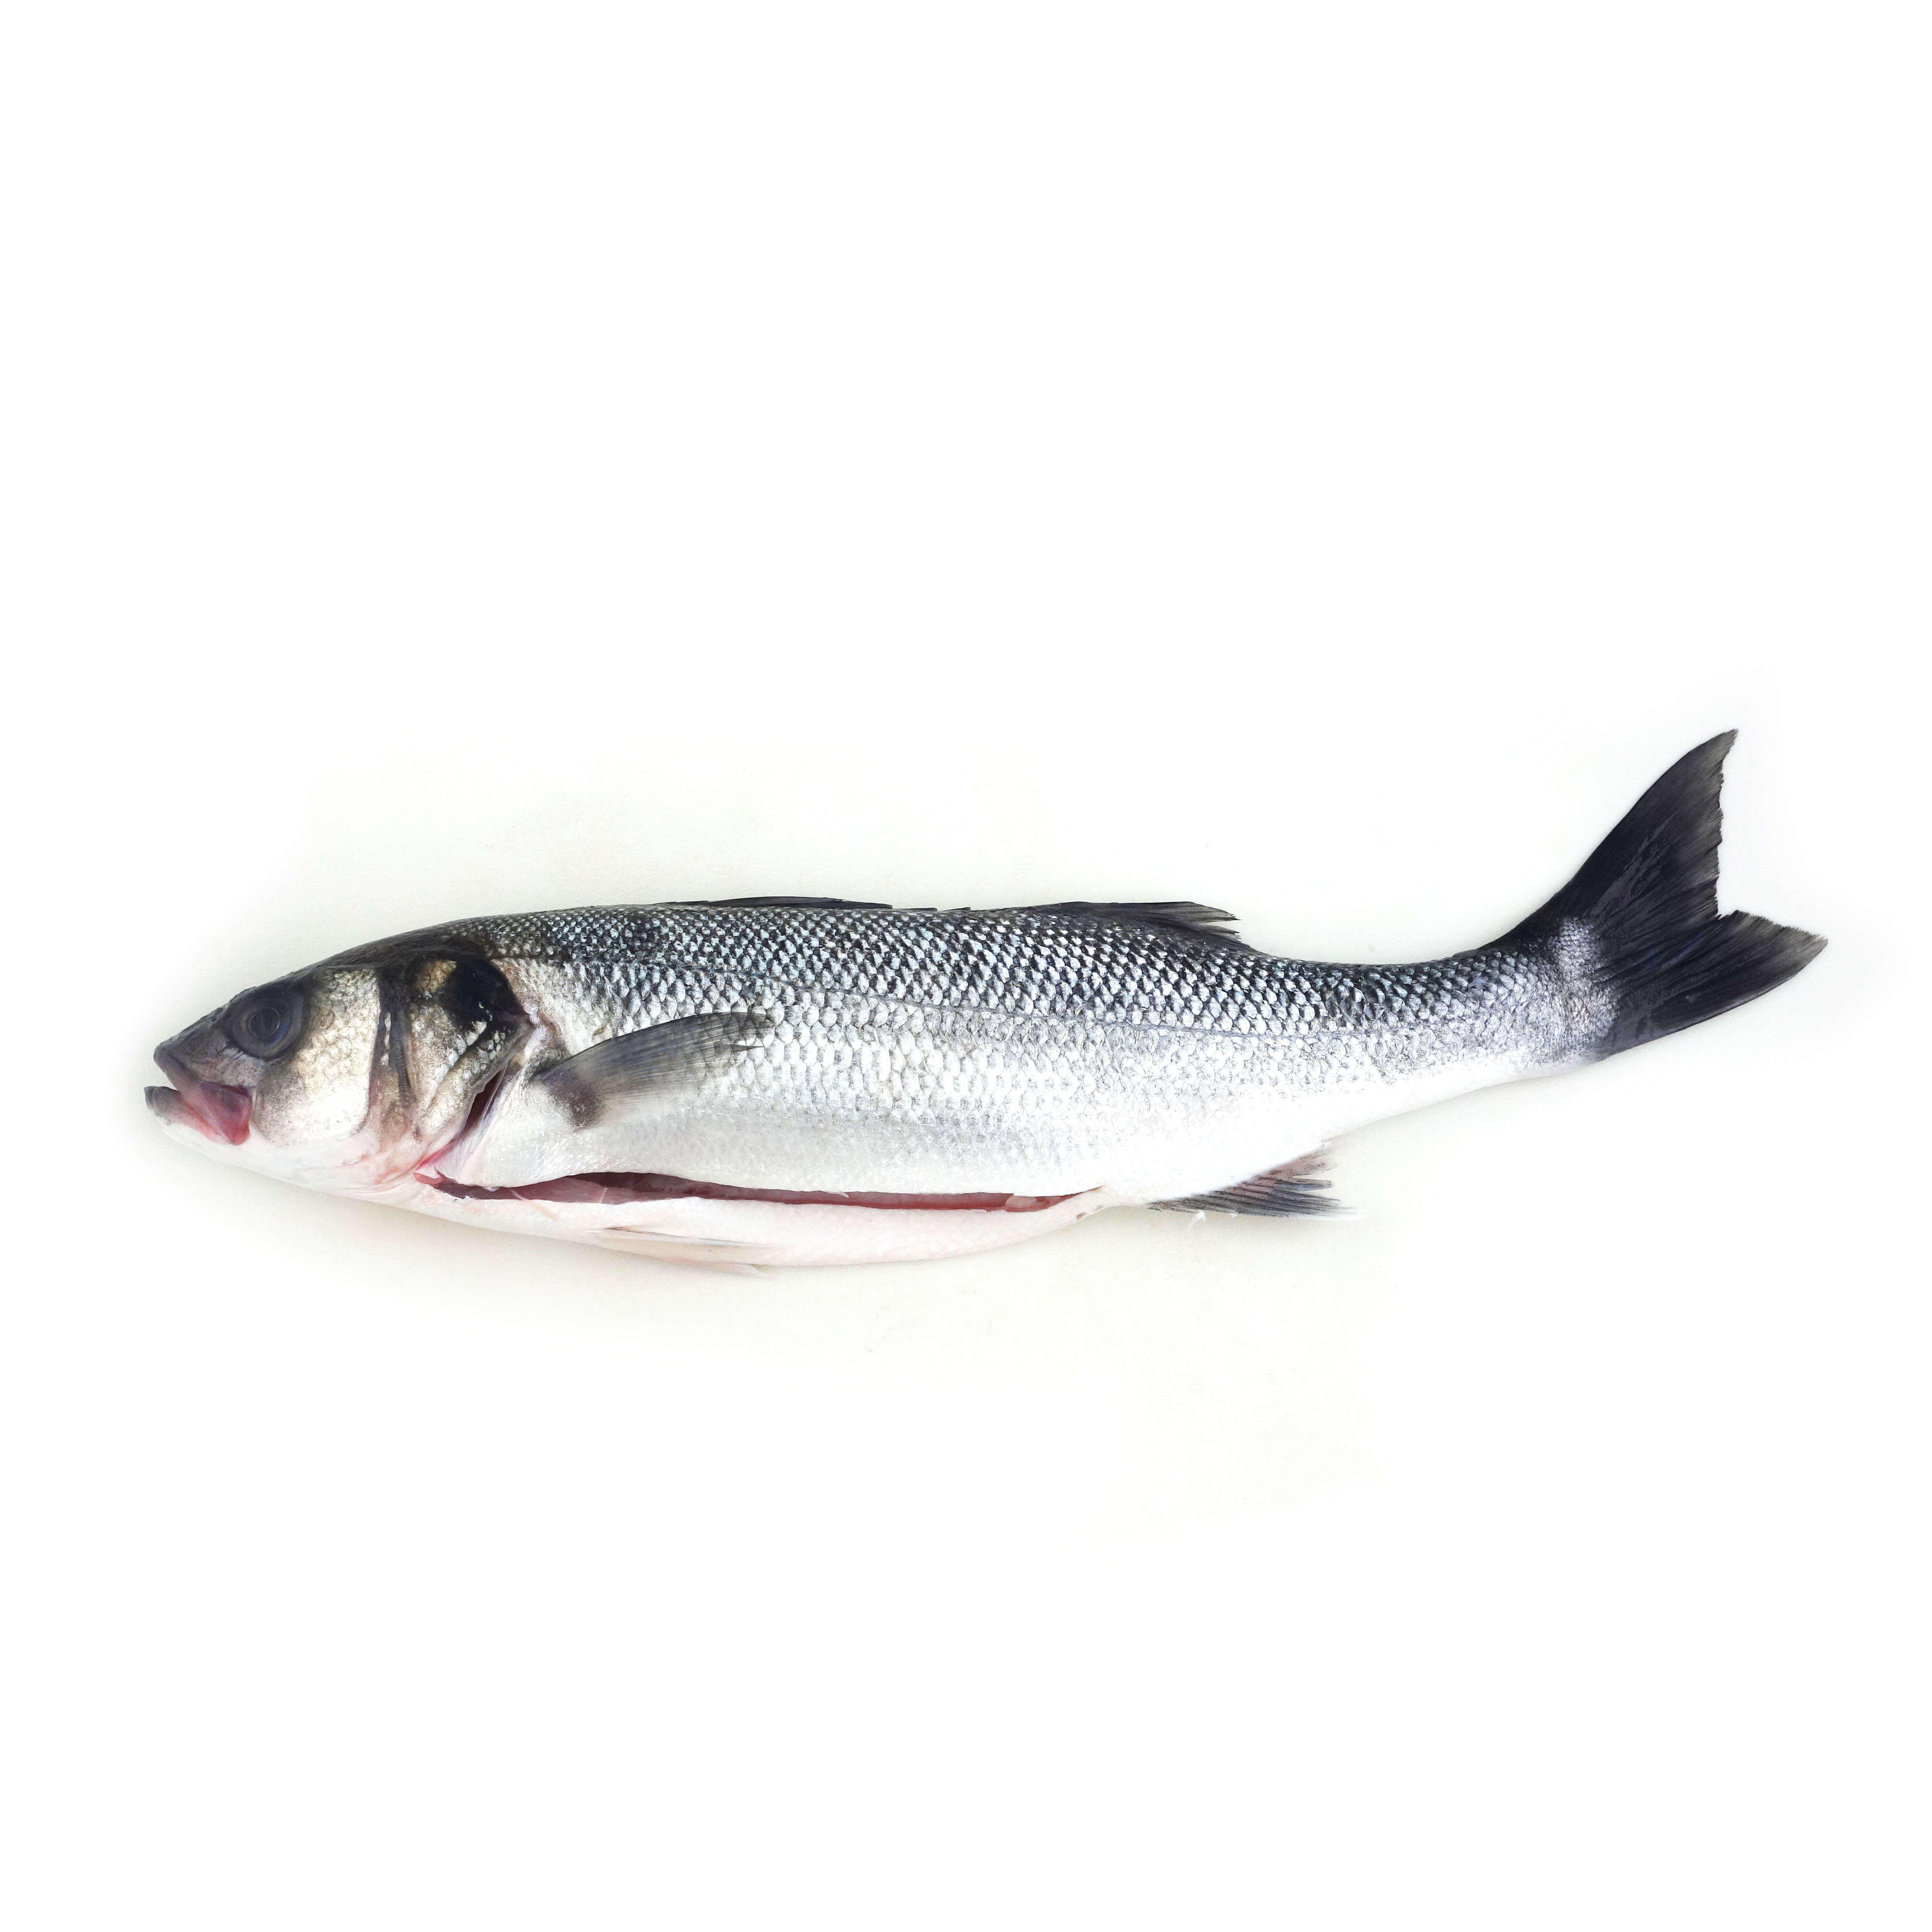 急凍法國野生原條海鱸魚(Seabass)- 已去鰓及內臟